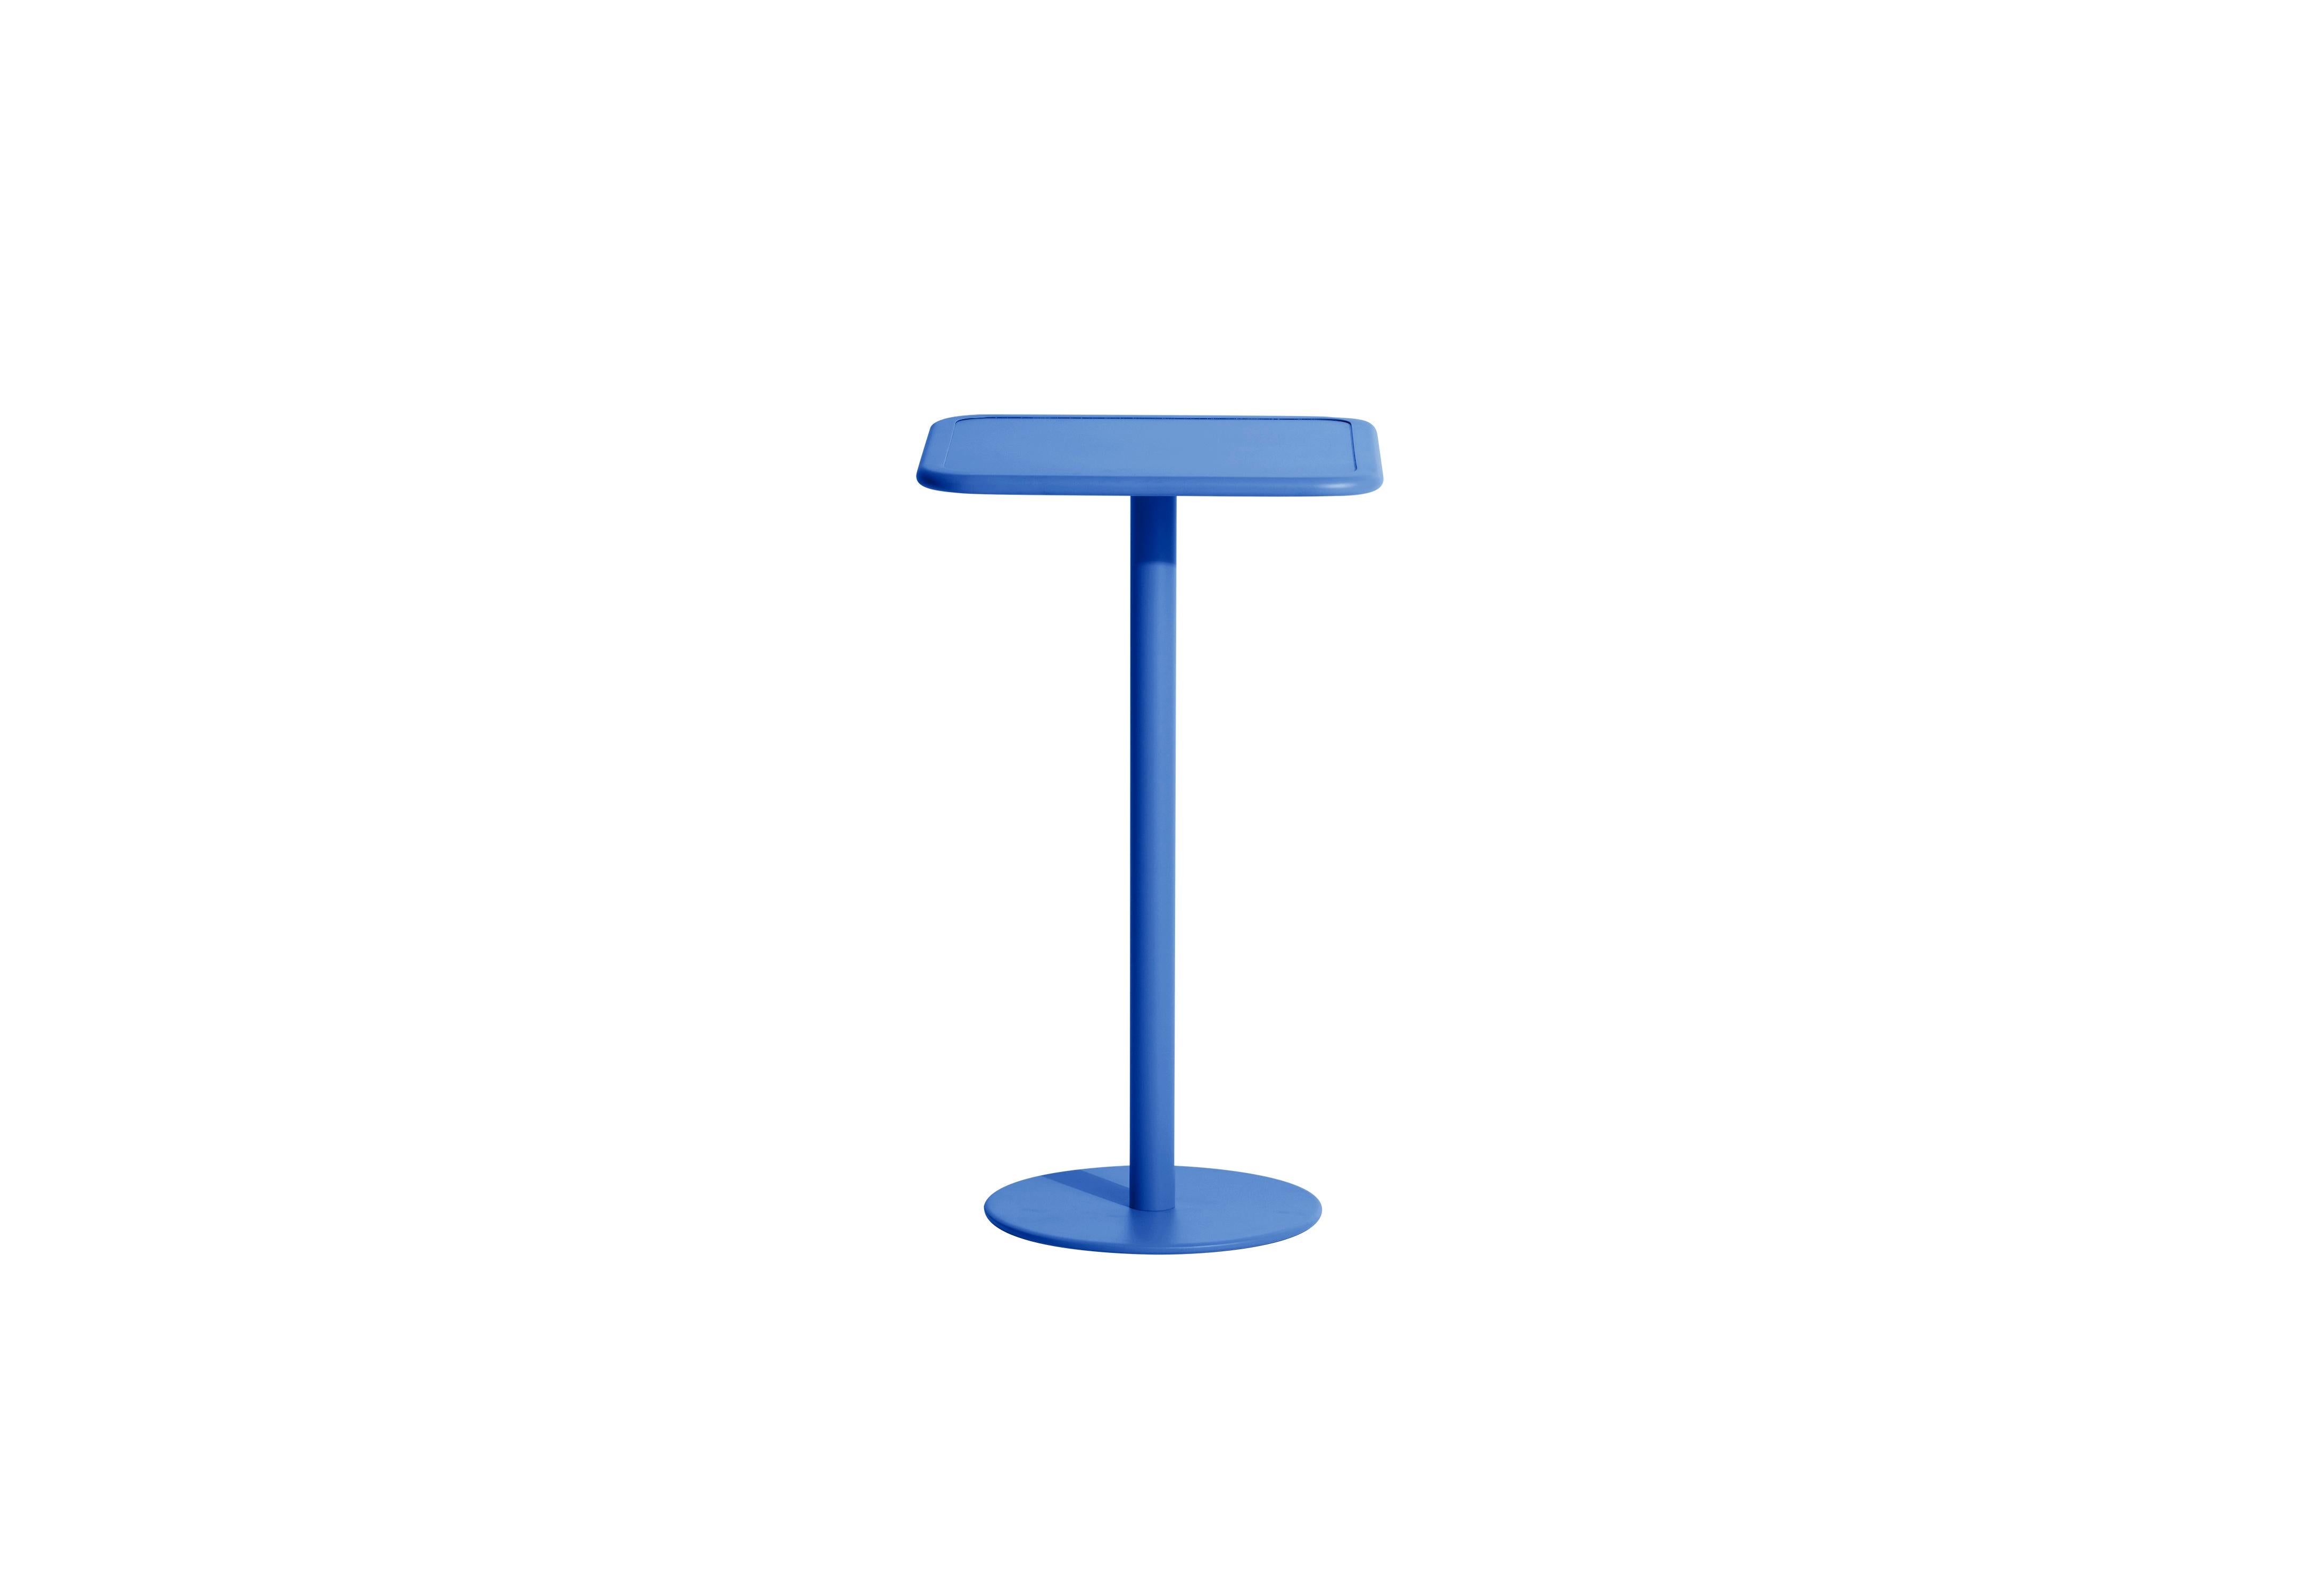 Petite Friture Week-End Square High Table in Blue Aluminium by Studio BrichetZiegler, 2017

Die Week-End-Kollektion besteht aus einer kompletten Palette von Außenmöbeln mit mattierter Epoxidharzlackierung mit Aluminiummaserung, die 18 Funktionen und